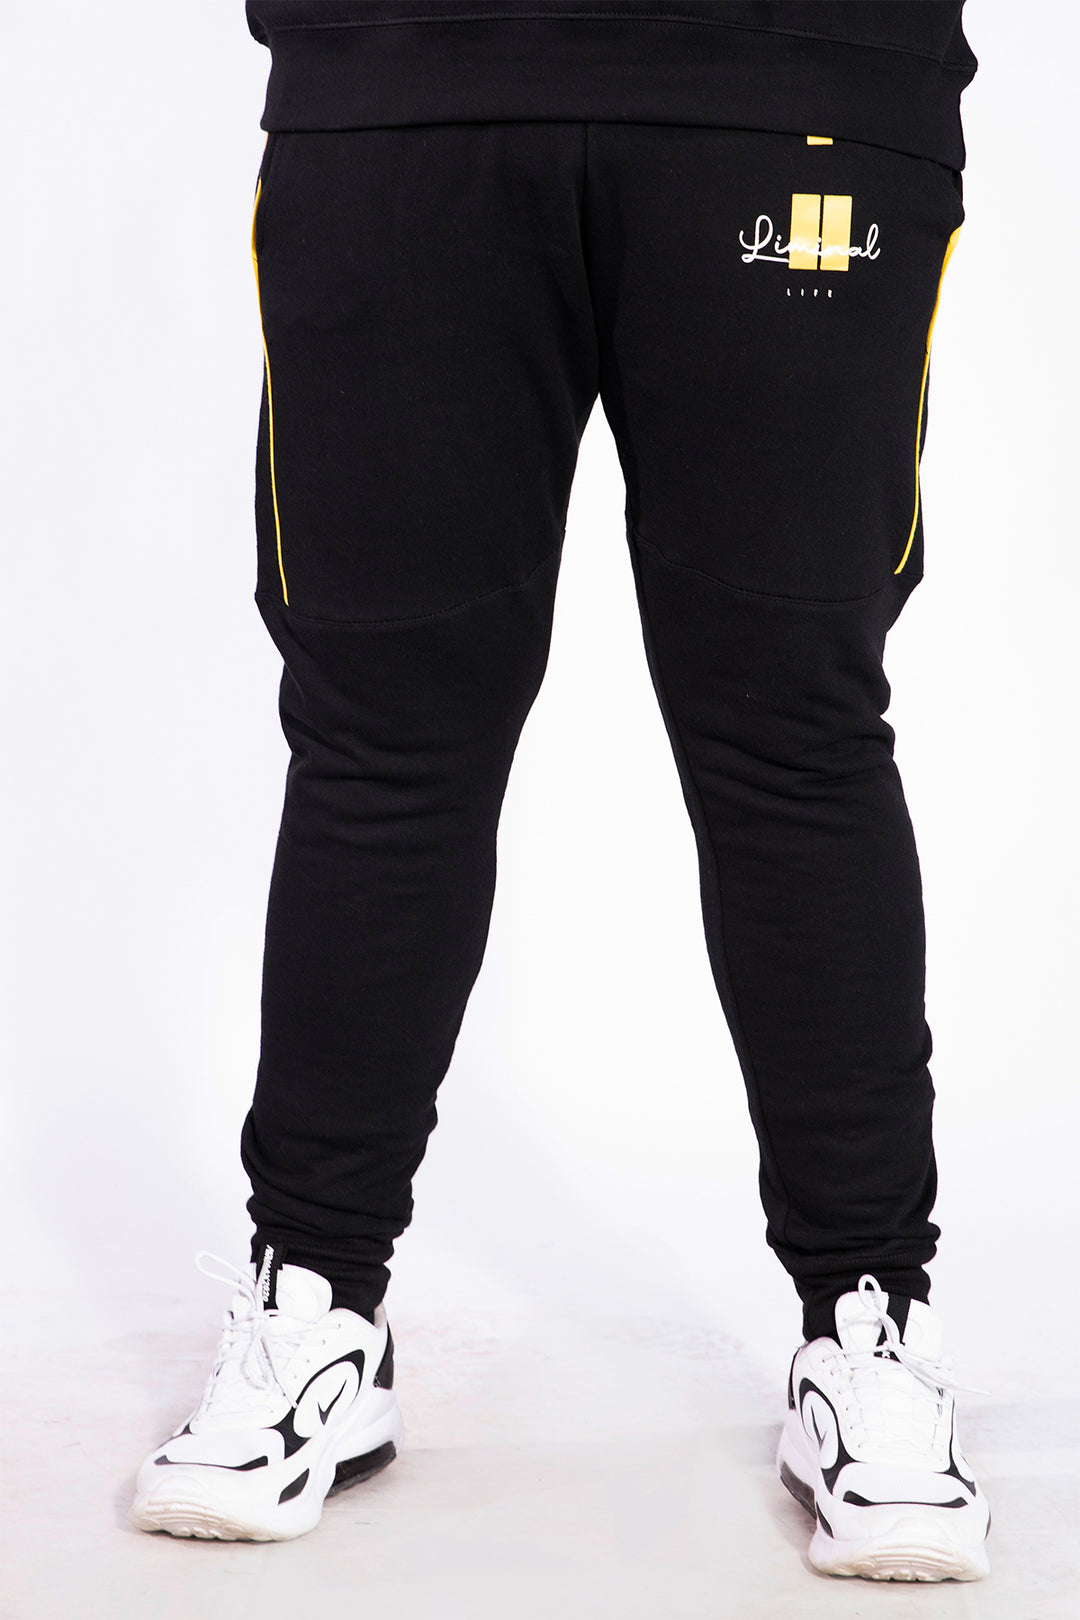 Liminal Black Jog Pants (Plus Size)  - W21 - MTR026P